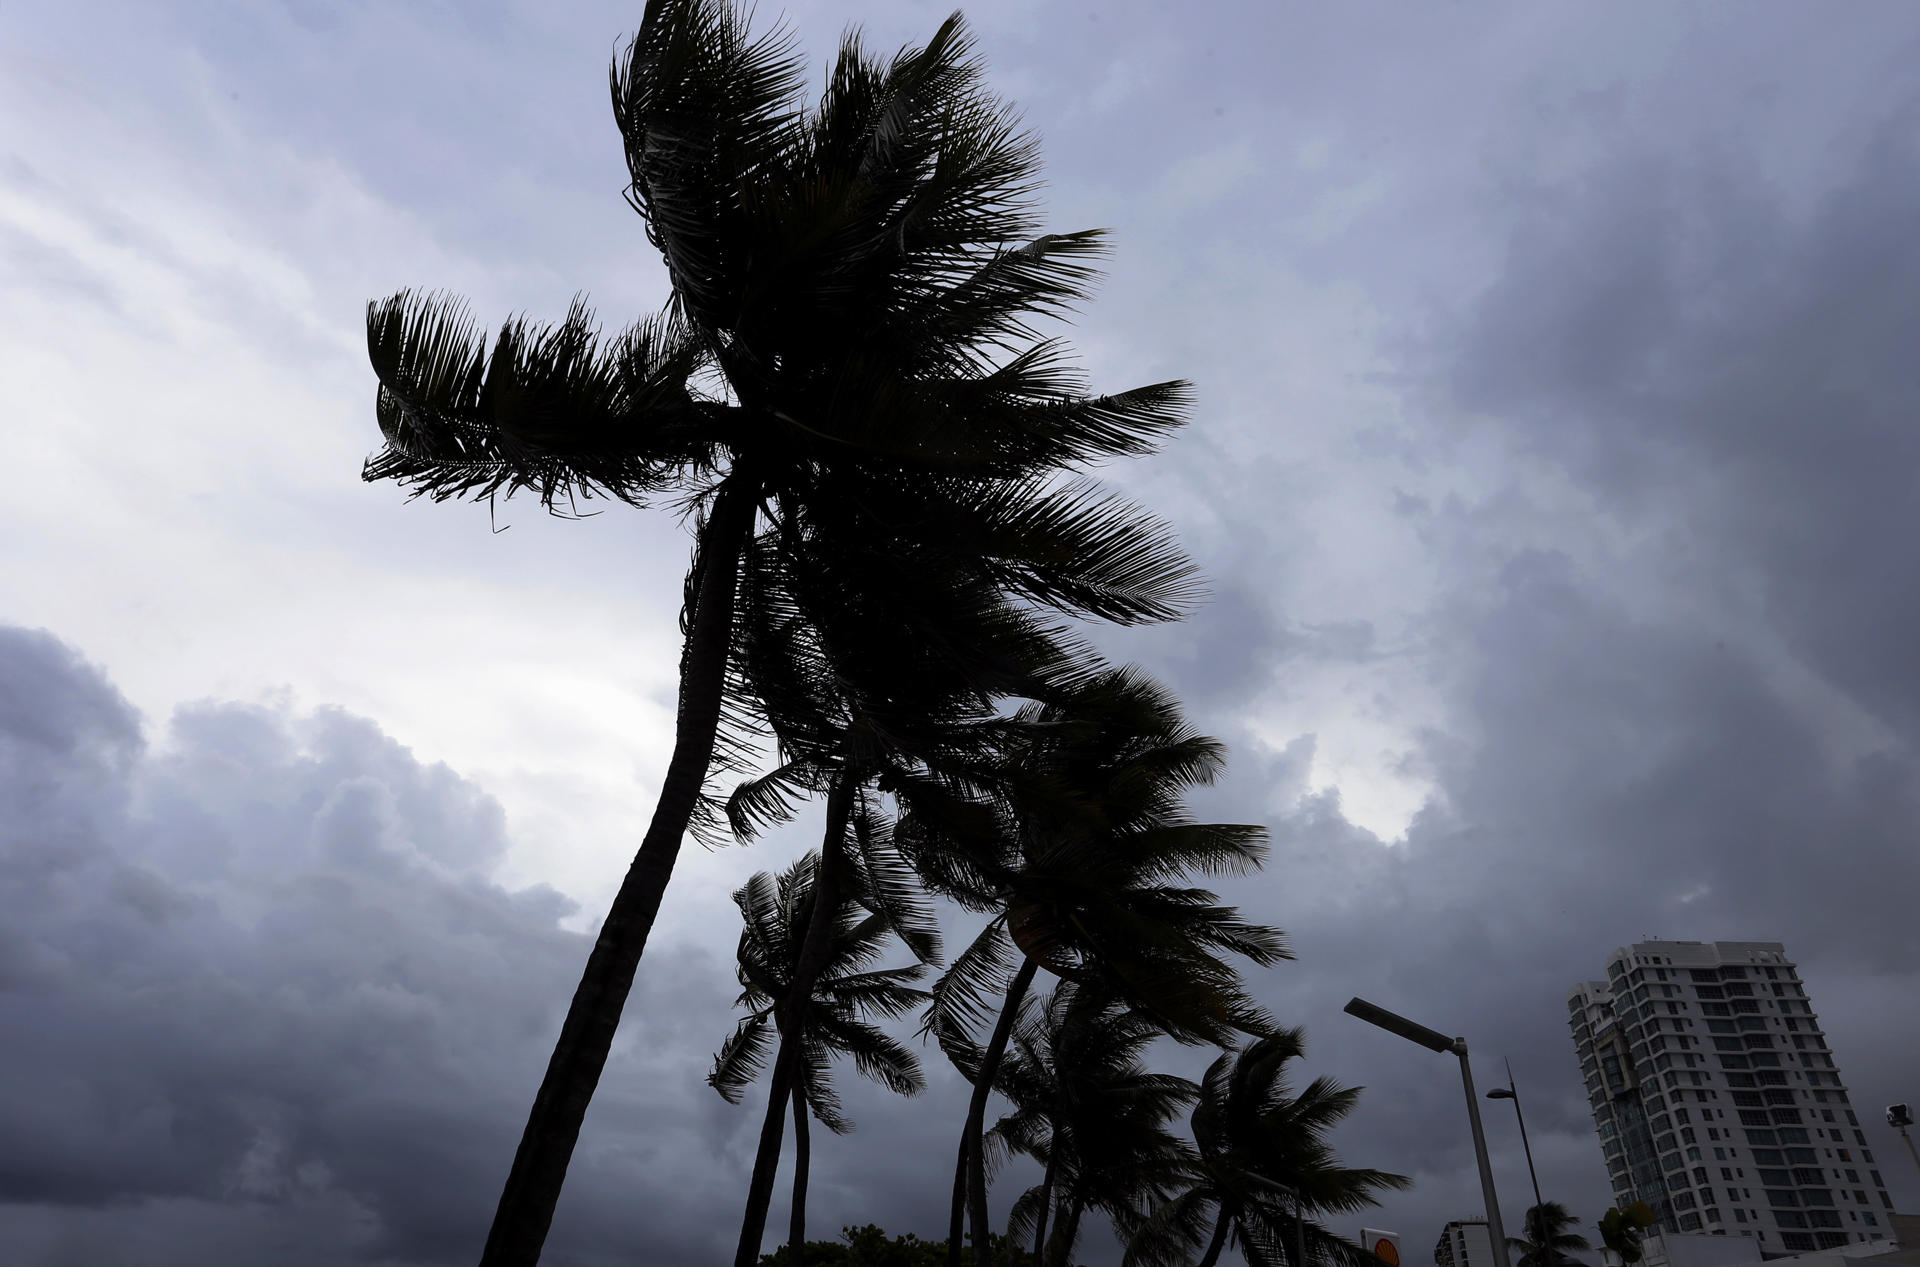 El sistema, que se formó el viernes y es la cuarta tormenta tropical de la actual temporada de huracanes en el Atlántico, presenta vientos máximos sostenidos de 45 millas por hora (75 km/h) y se ubica a 1.160 millas (1.865 km) al oeste de las islas Azores. Fotografía de archivo. EFE/Thais Llorca